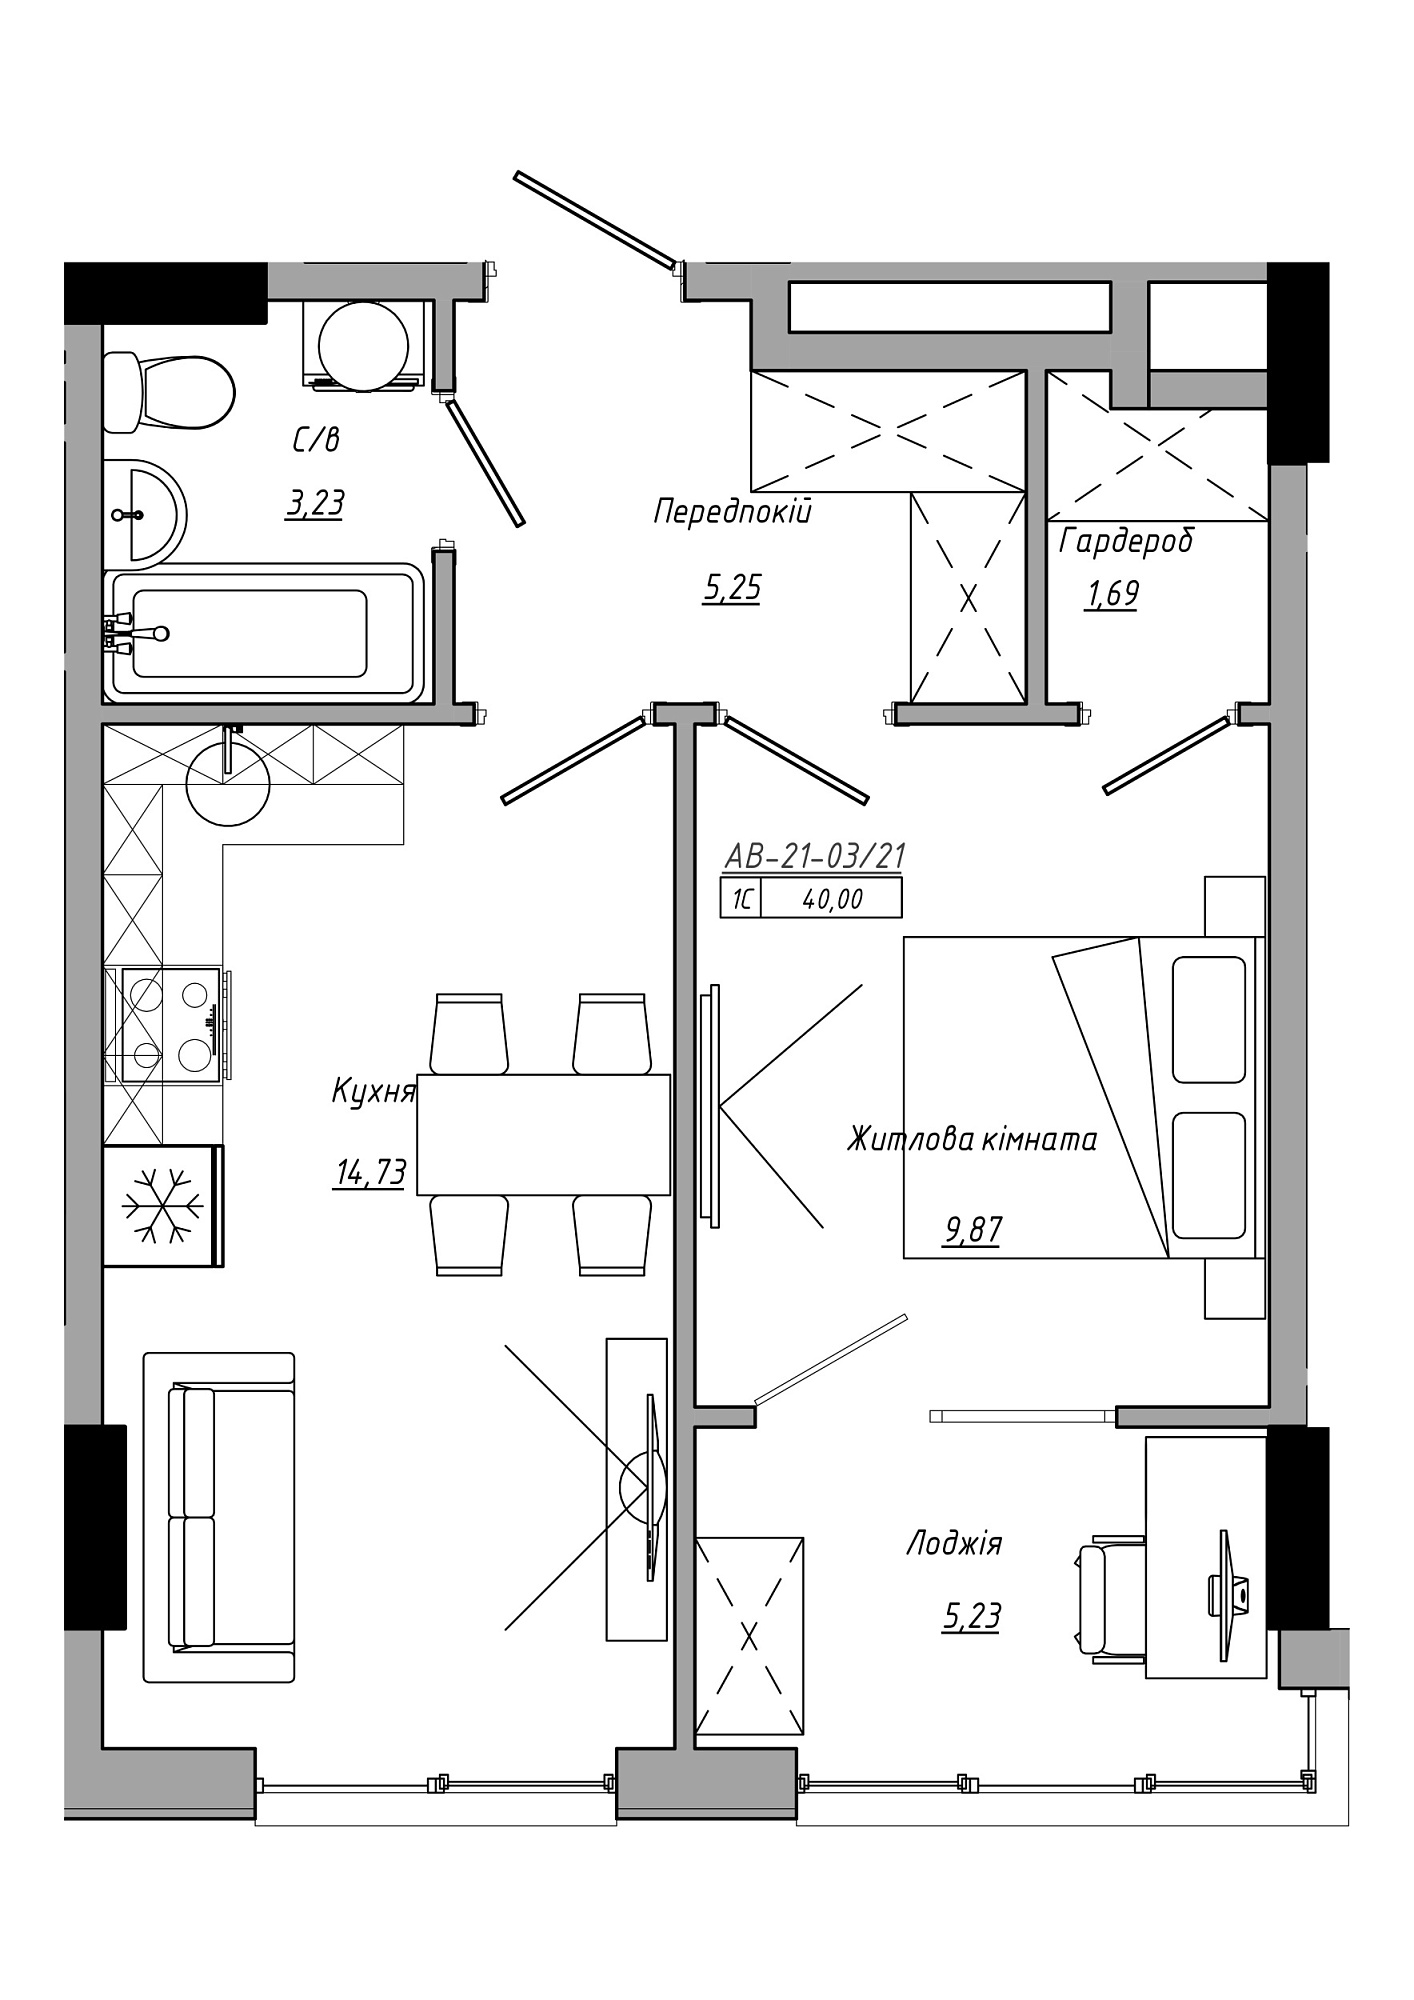 Планировка 1-к квартира площей 40м2, AB-21-03/00021.